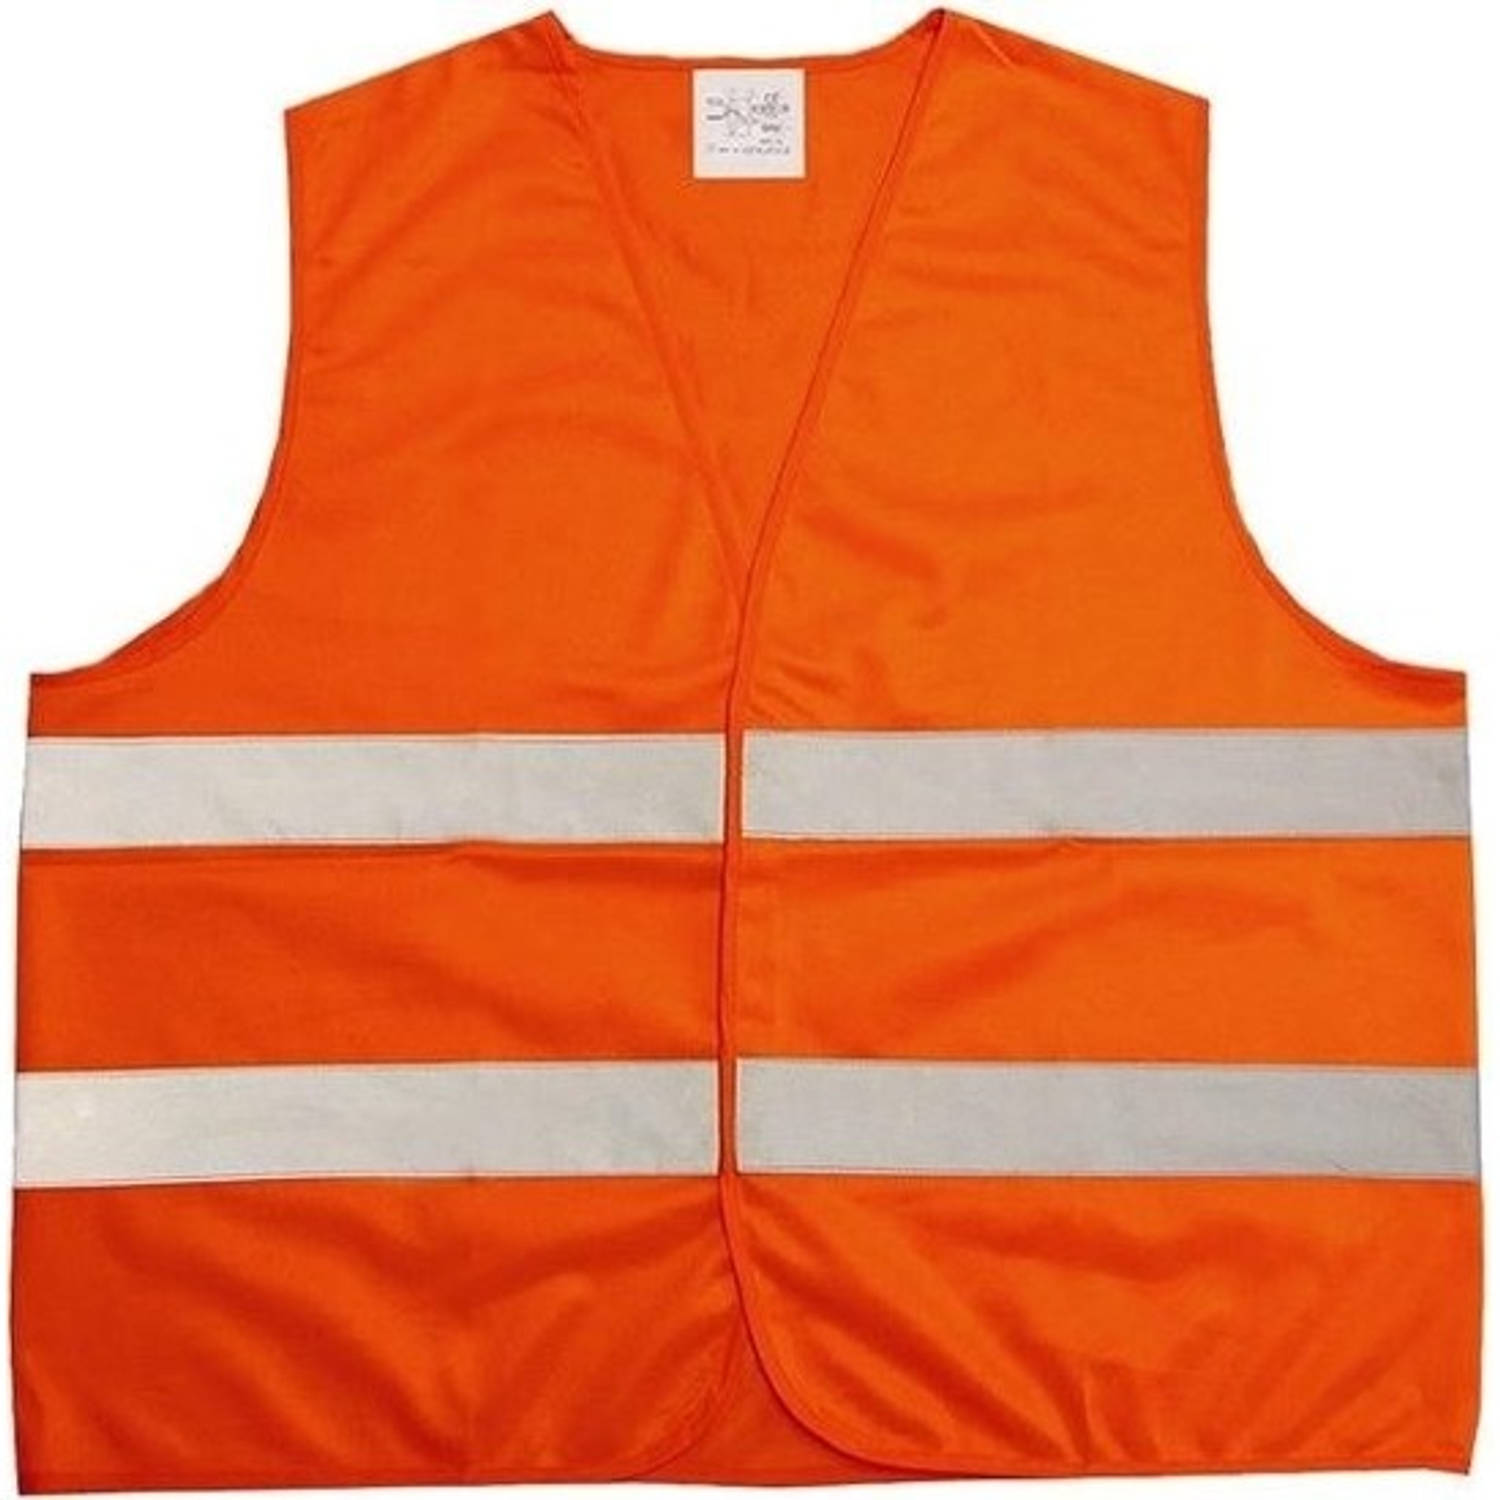 2x Neon oranje veiligheidsvest voor volwassenen - Veiligheidshesje